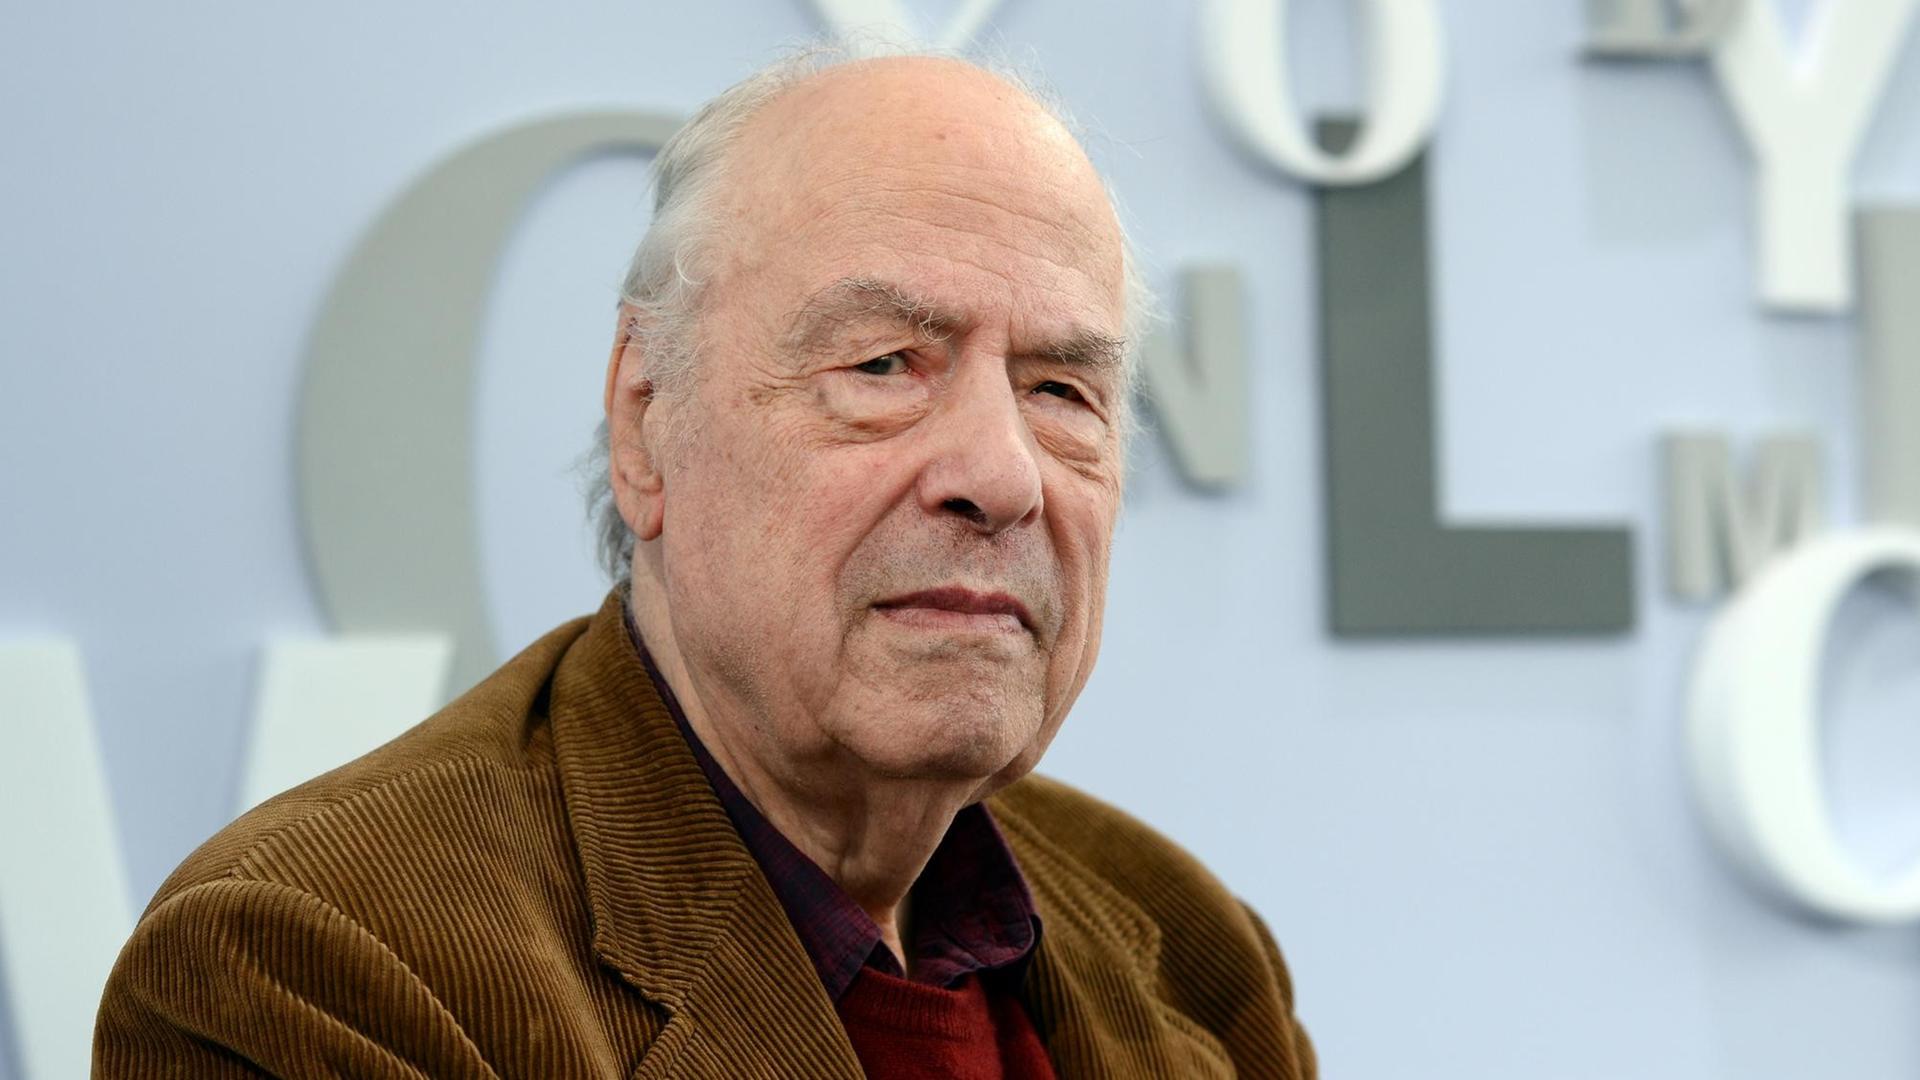 Der 84-jährige Autor Karl-Heinz Bohrer blickt in die Kamera. Er trägt ein braunes Cordsakko und im Hintergrund ist eine Buchstaben-Dekoration der Leipziger Buchmesse zu sehen.